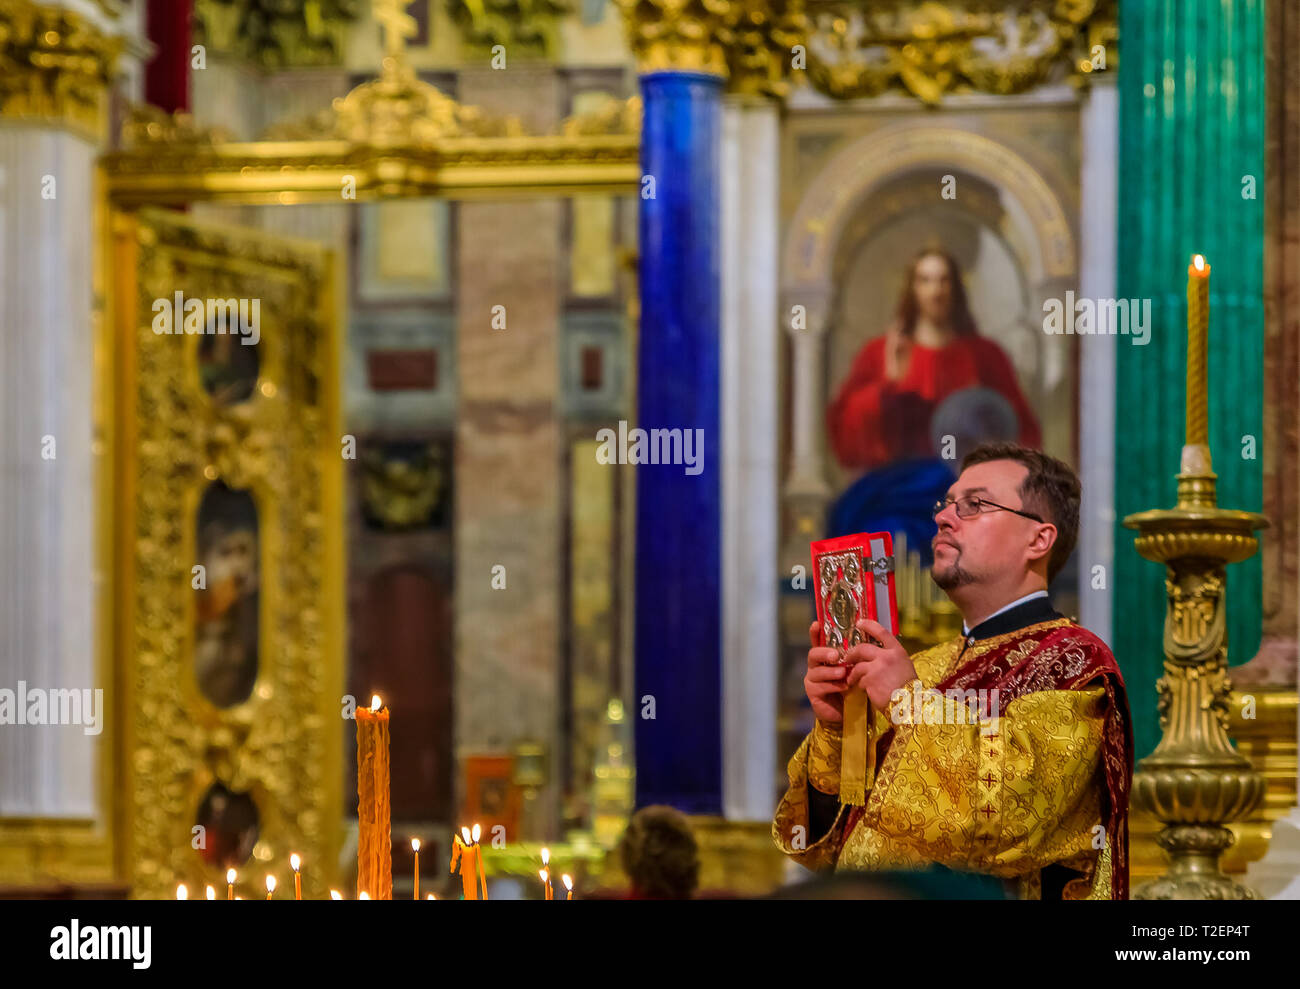 Sankt Petersburg, Russland - 10. September 2017: russisch-orthodoxer Priester in traditionellen klerikalen Kleidung, die Messe in der Saint Isaac's Russische Orth Stockfoto